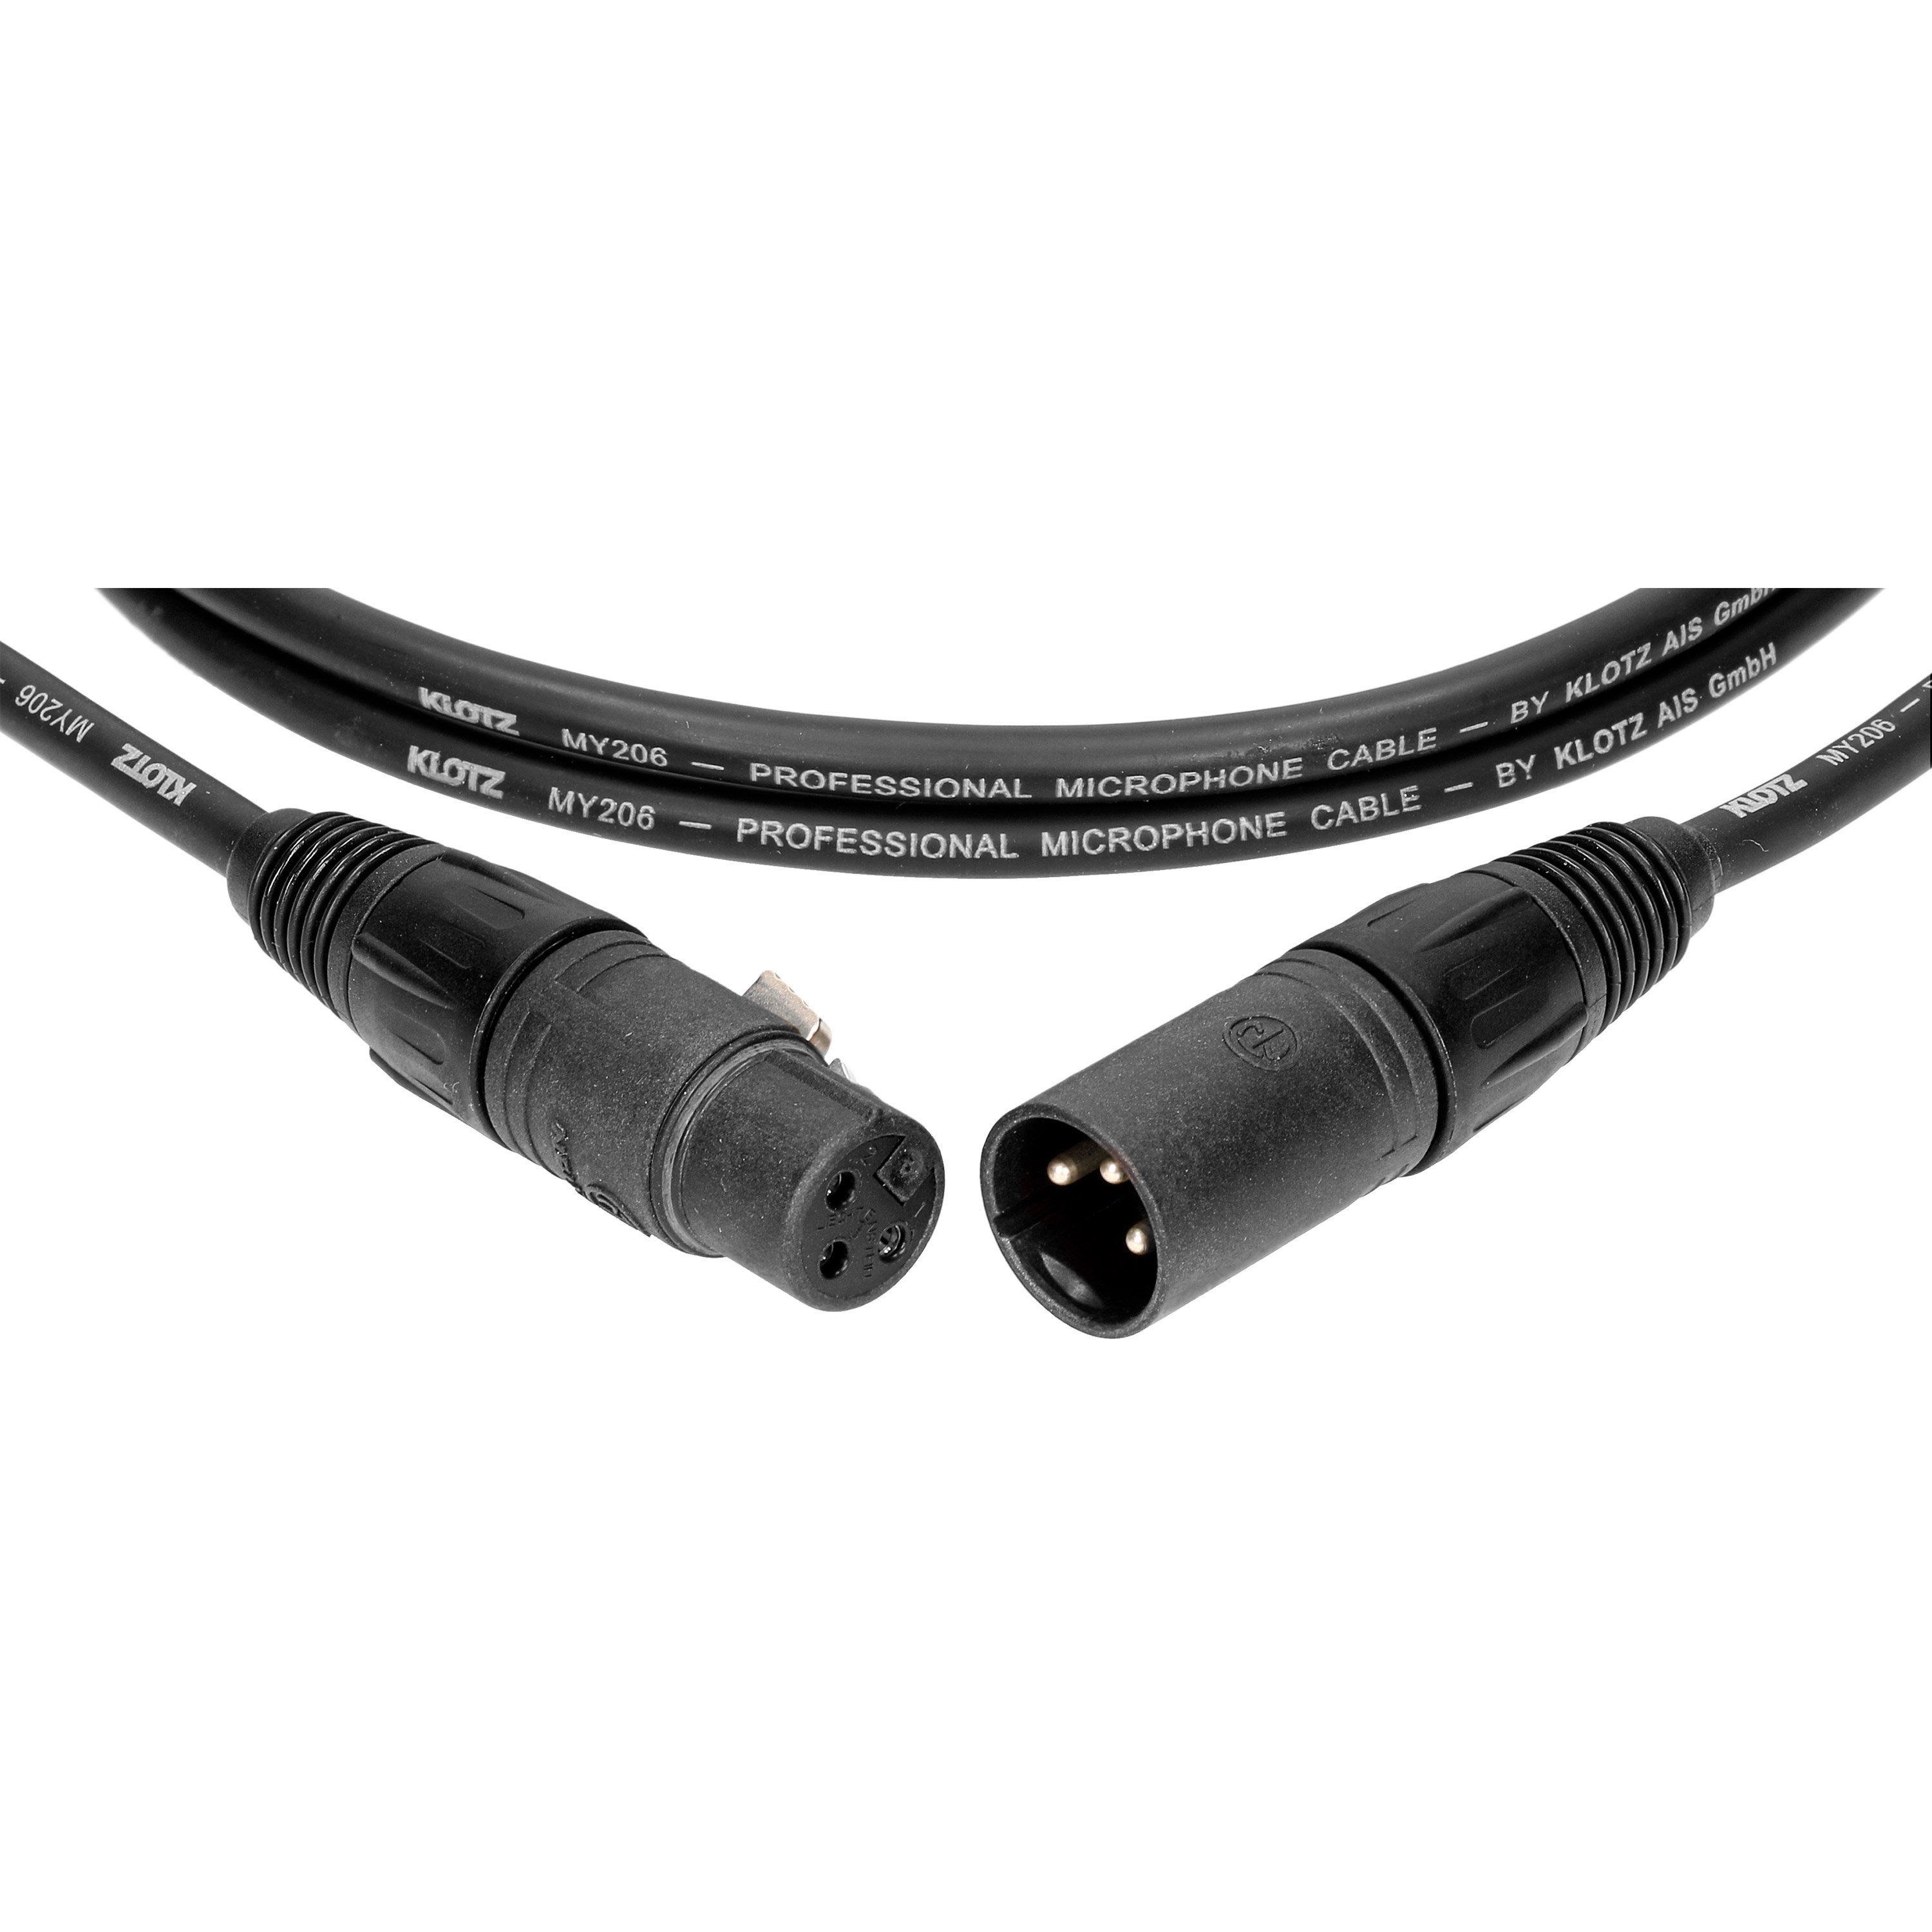 Klotz Câble M1 Pro XLR mâle/femelle Neutrik KMK, 3m